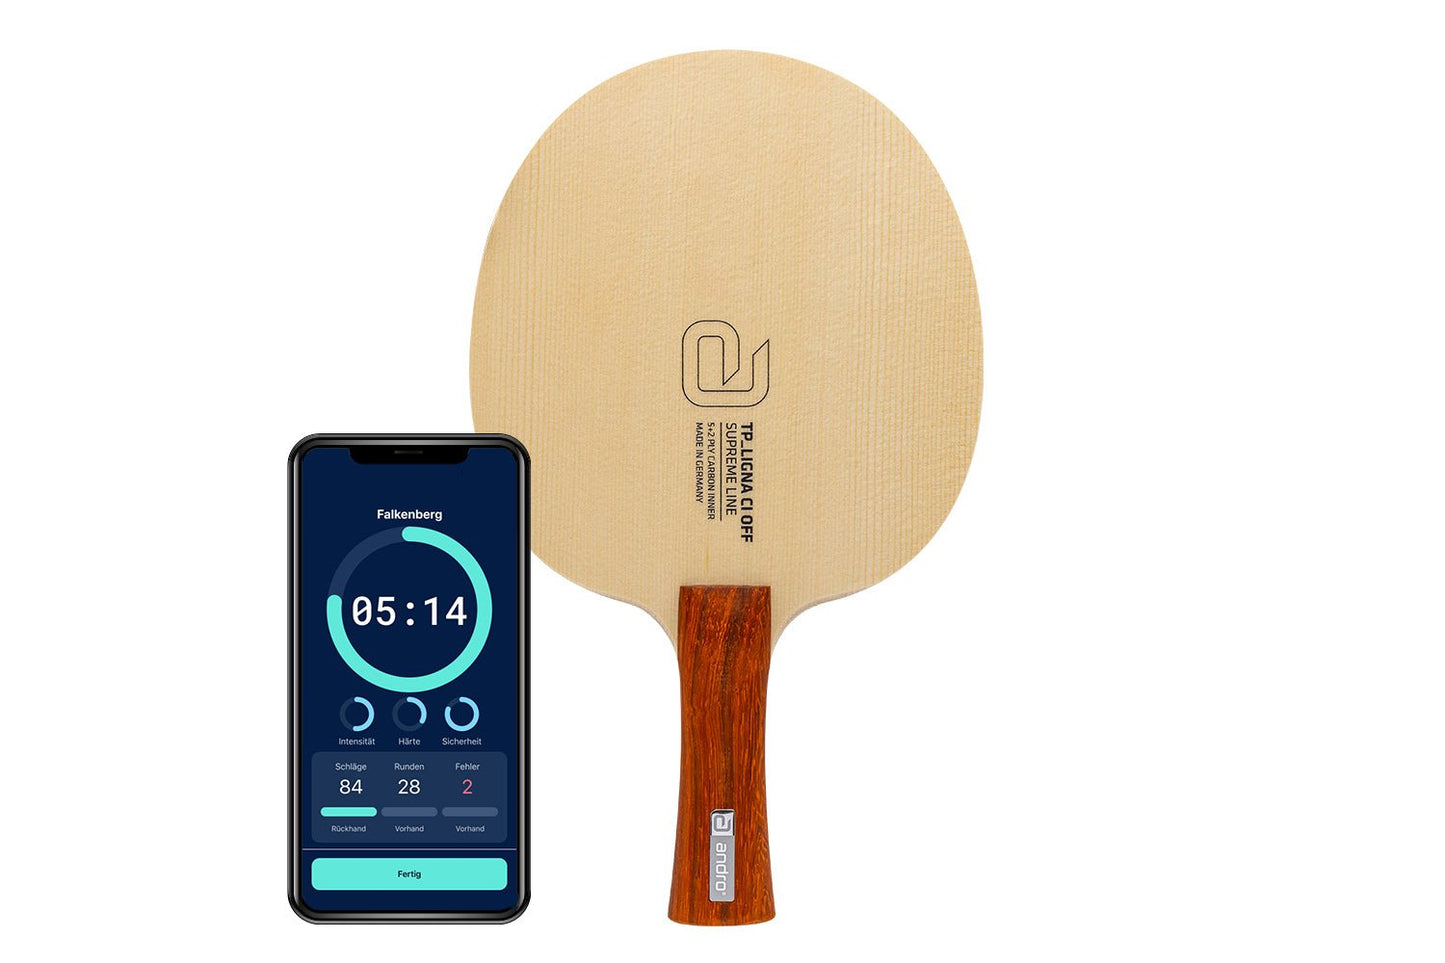 andro TP Ligna CI Tischtennisschläger mit konkaven Griff und Smartphone zeigt Daten des Schlägers vor weißem Hintergrund